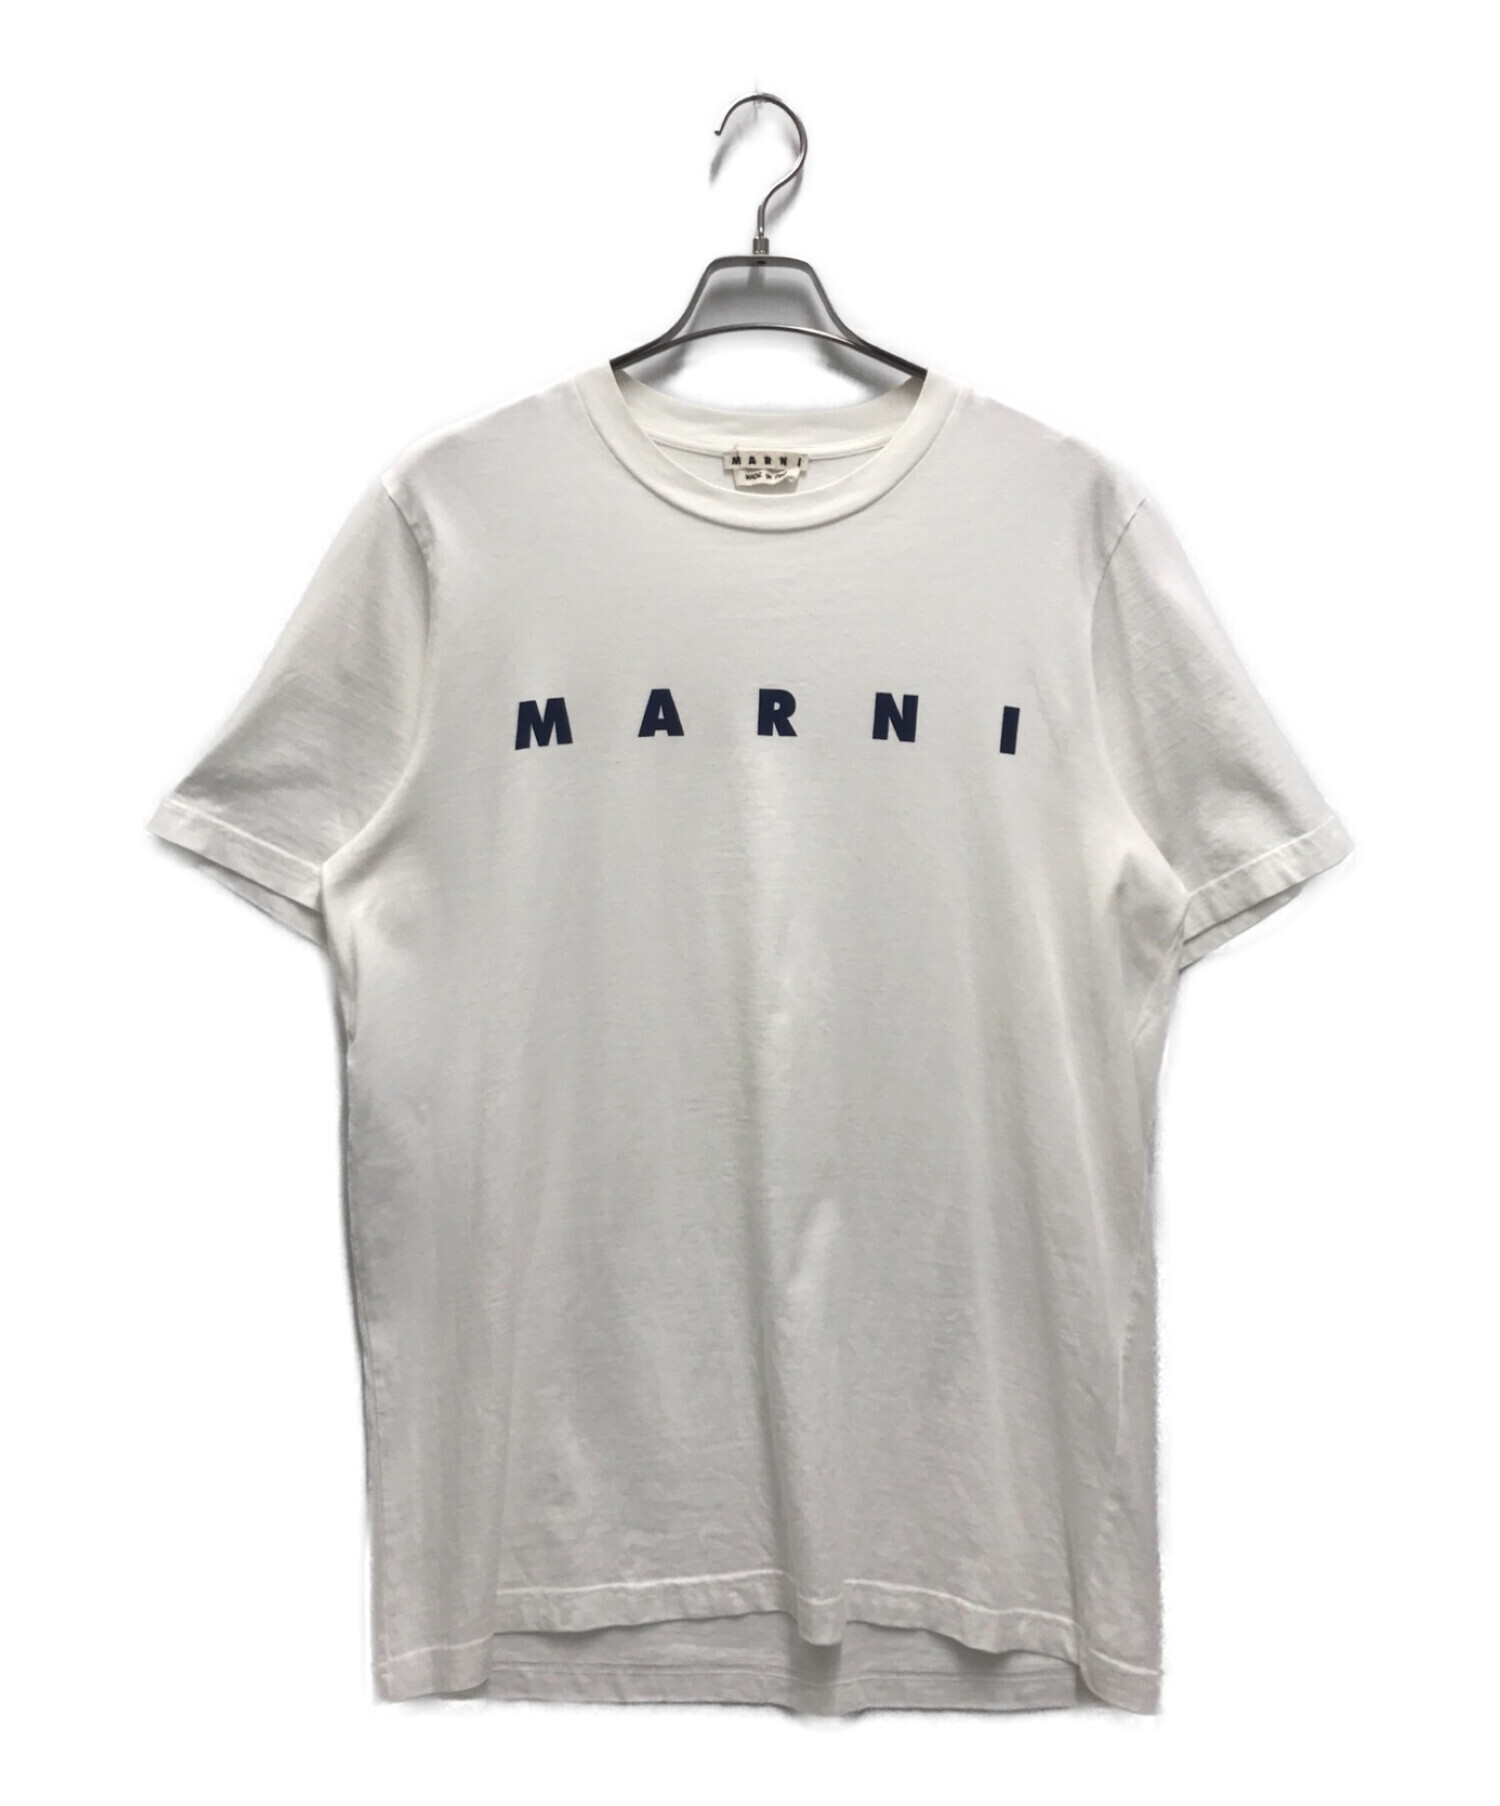 MARNI マルニ ロゴ Tシャツ サイズL | camillevieraservices.com